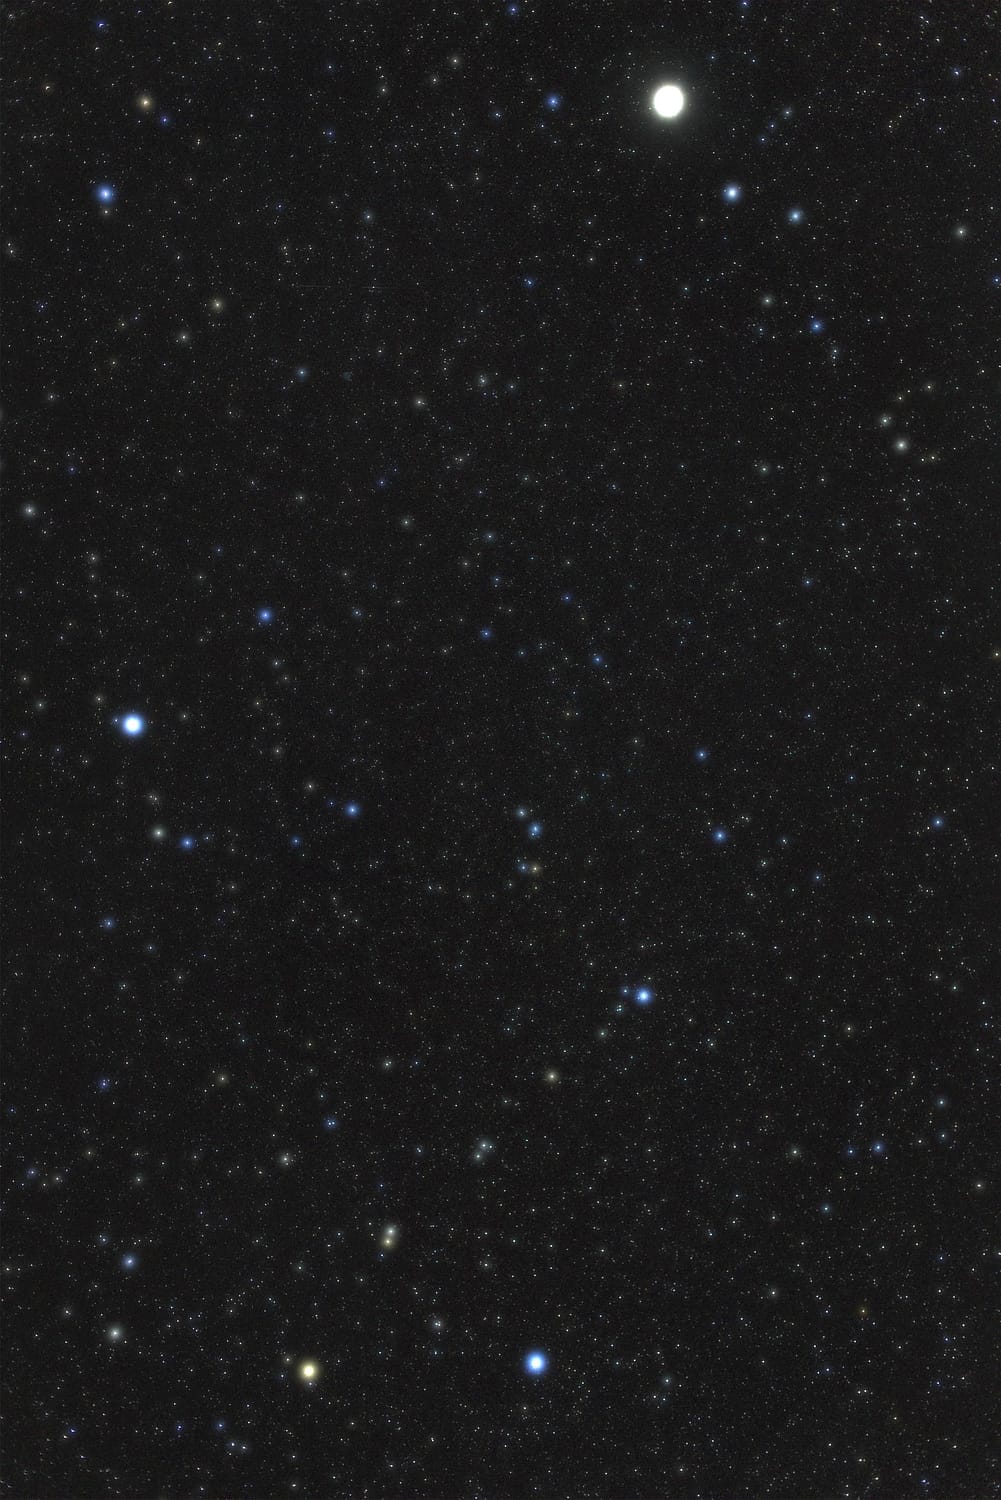 Zwischen dem Planeten Jupiter (oben) und dem Sternbild Kranich (unten) befindet sich in der Bildmitte das Sternbild Südlicher Fisch